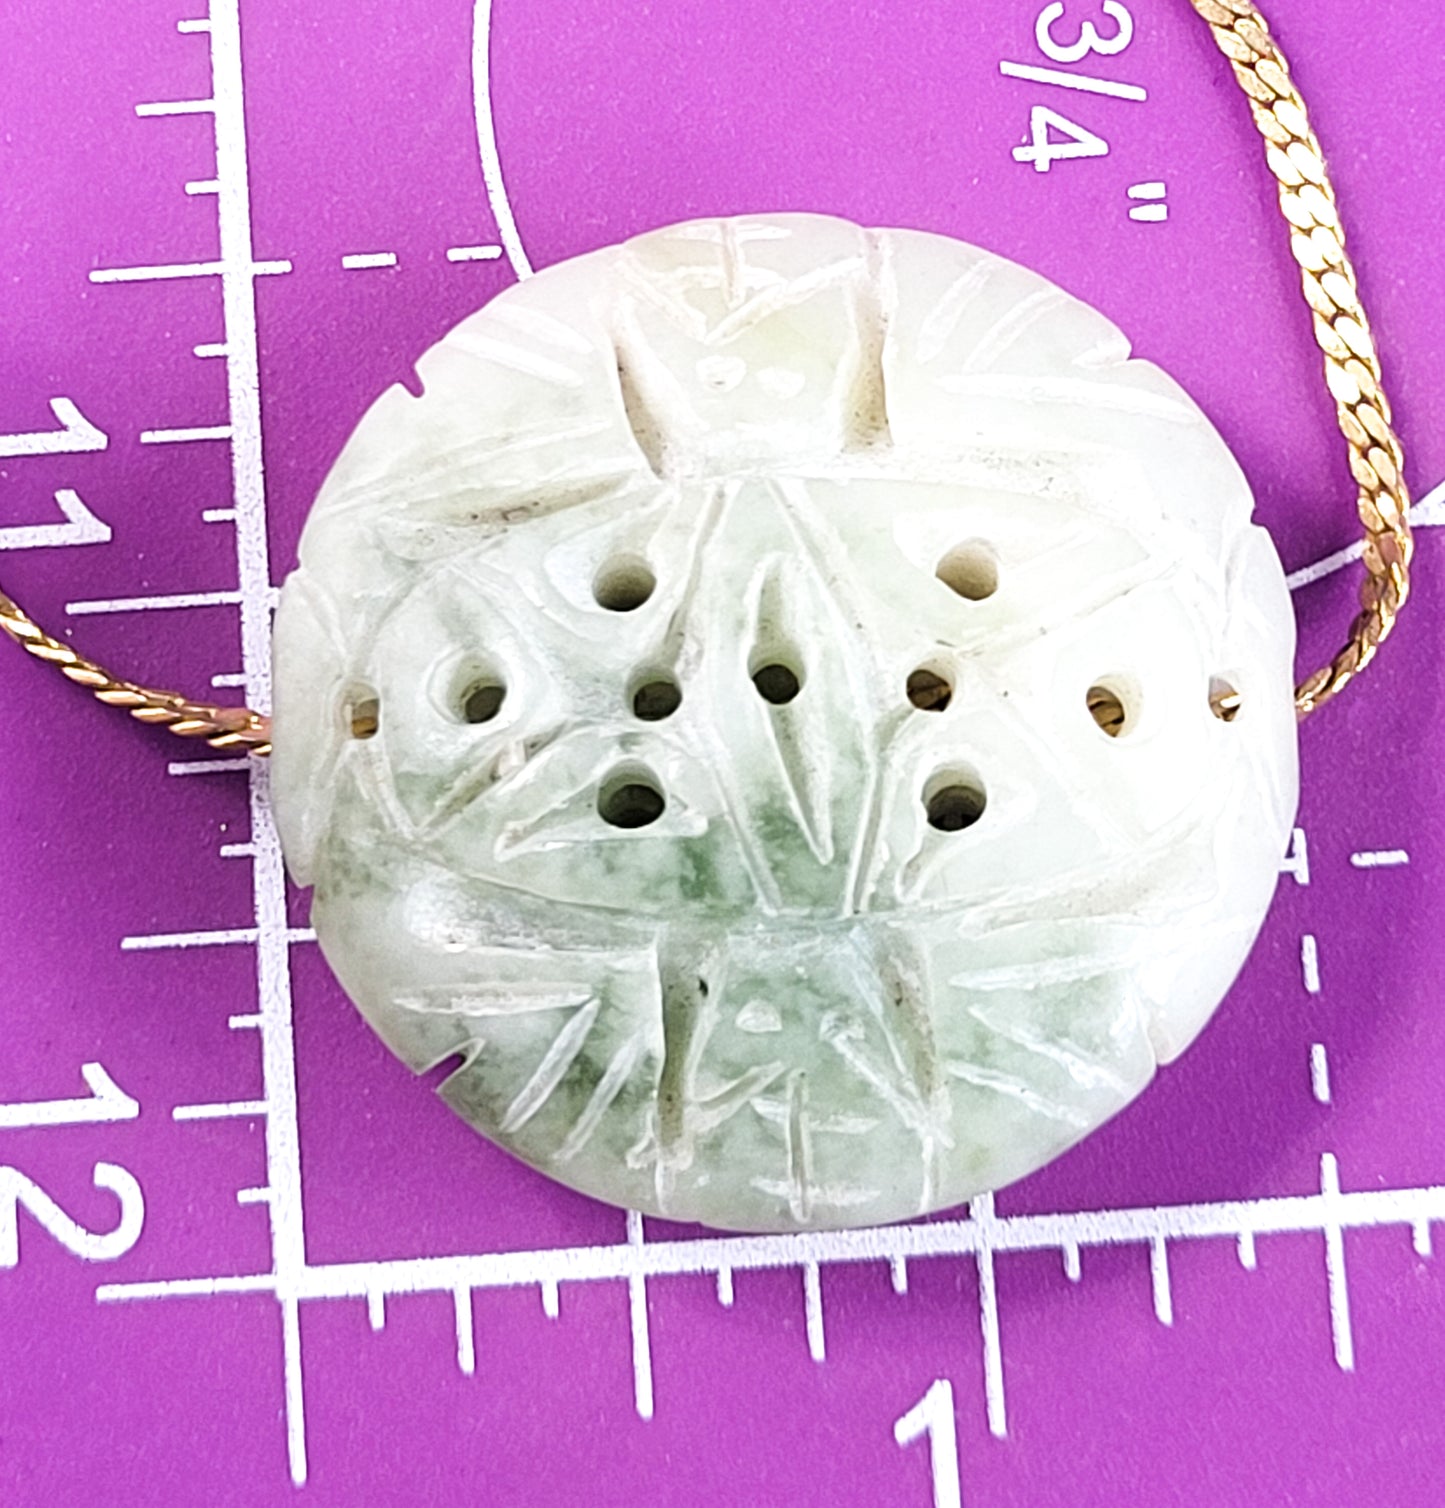 Light green Carved Nephrite Jade vintage slider pendant on gold toned necklace